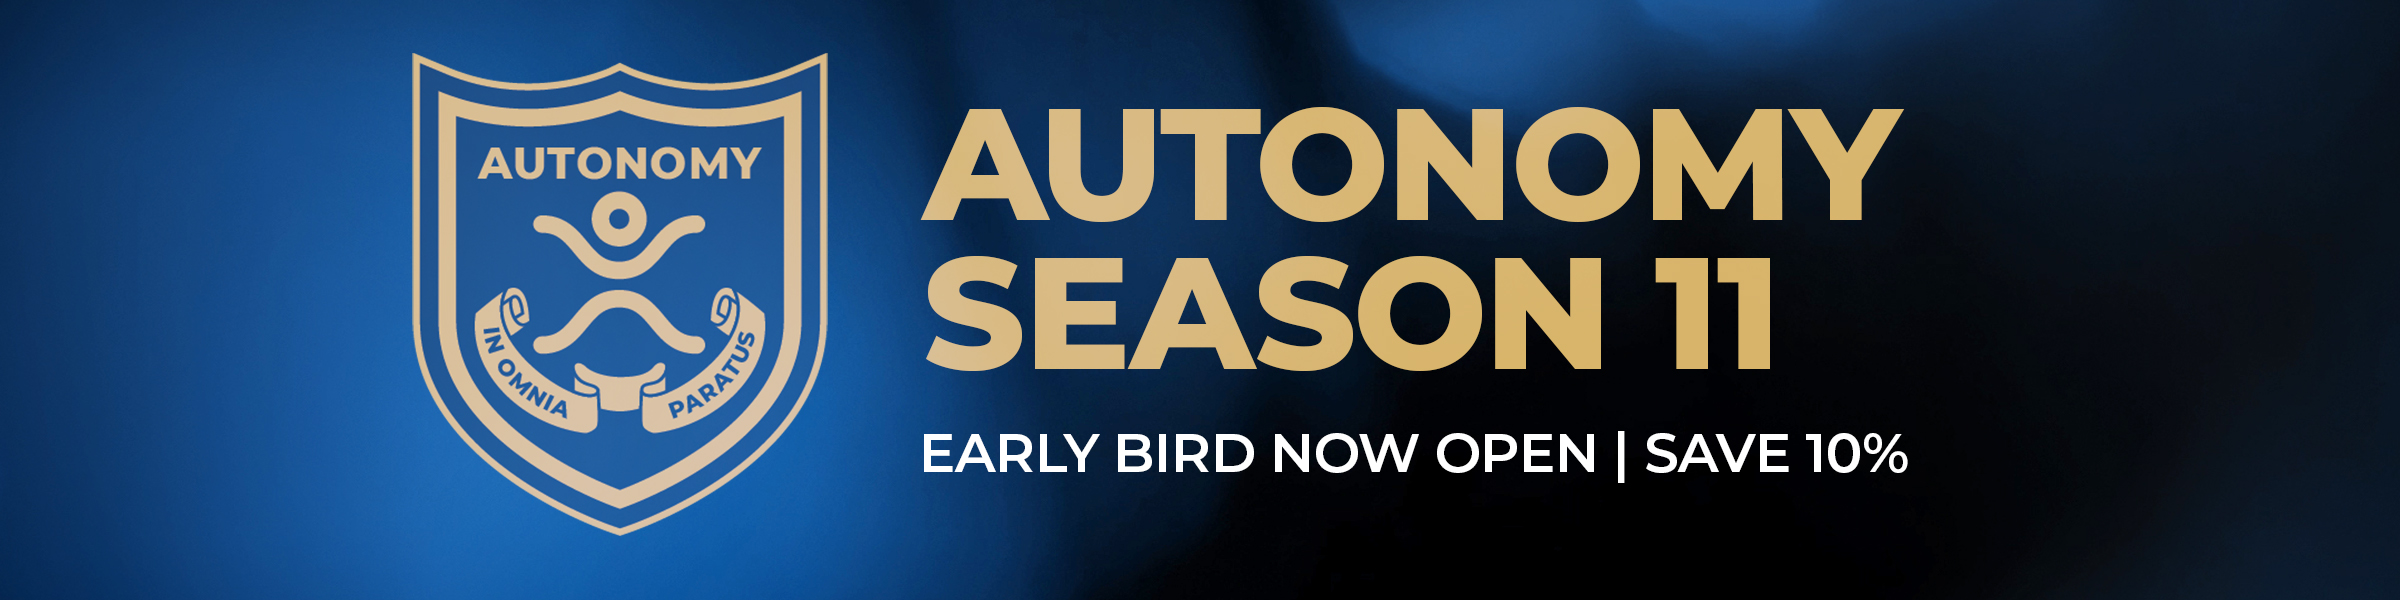 Autonomy | Season 11 Early Now Open! Save 10%